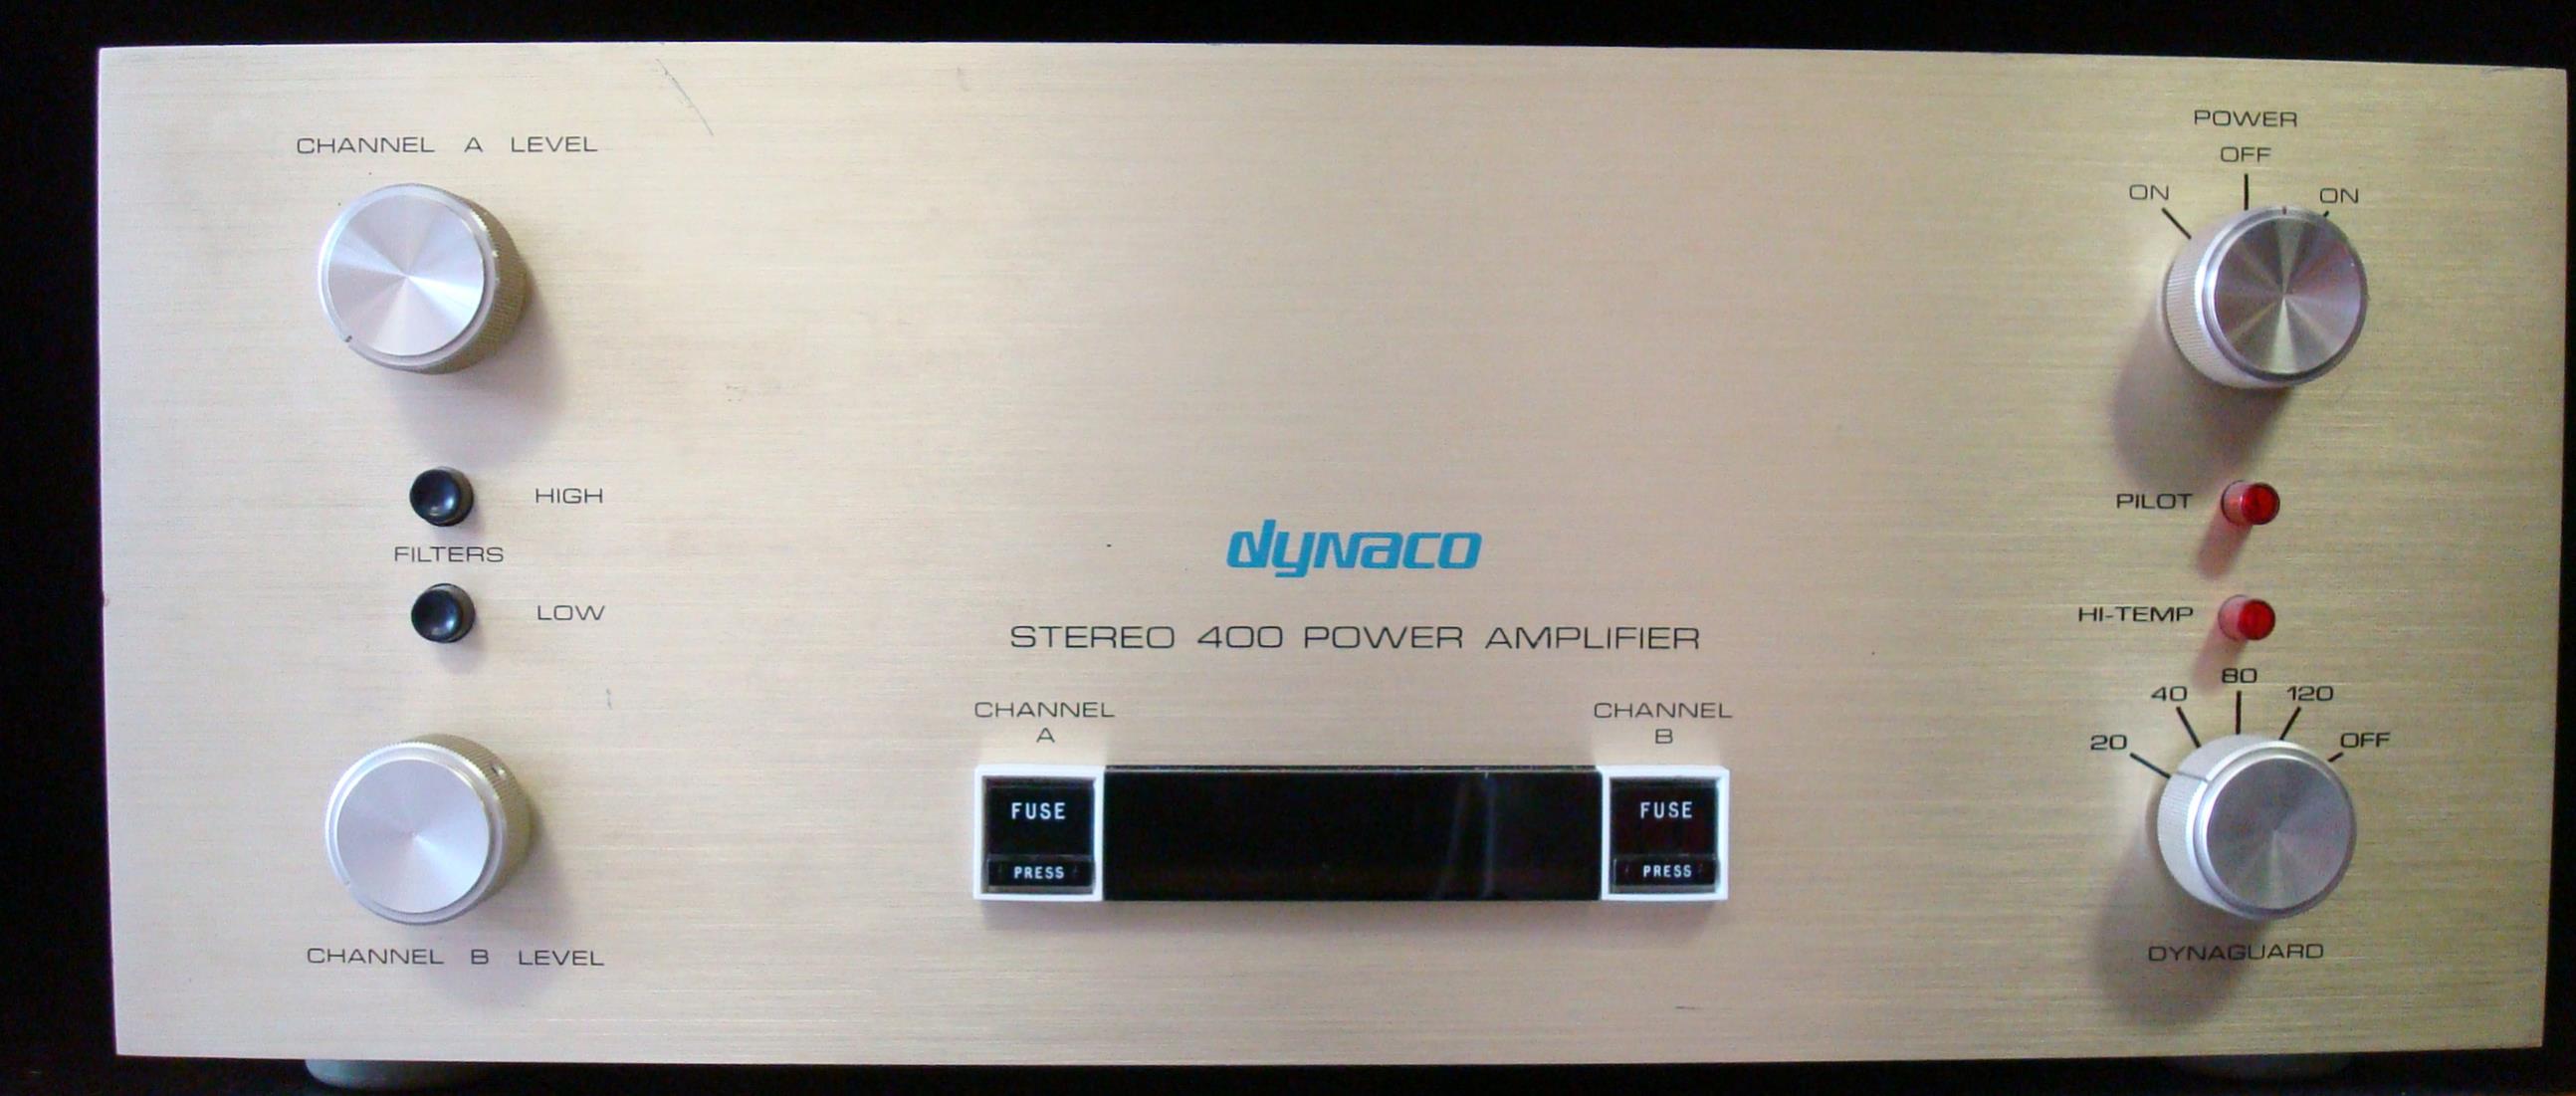 Dynaco Stereo 400